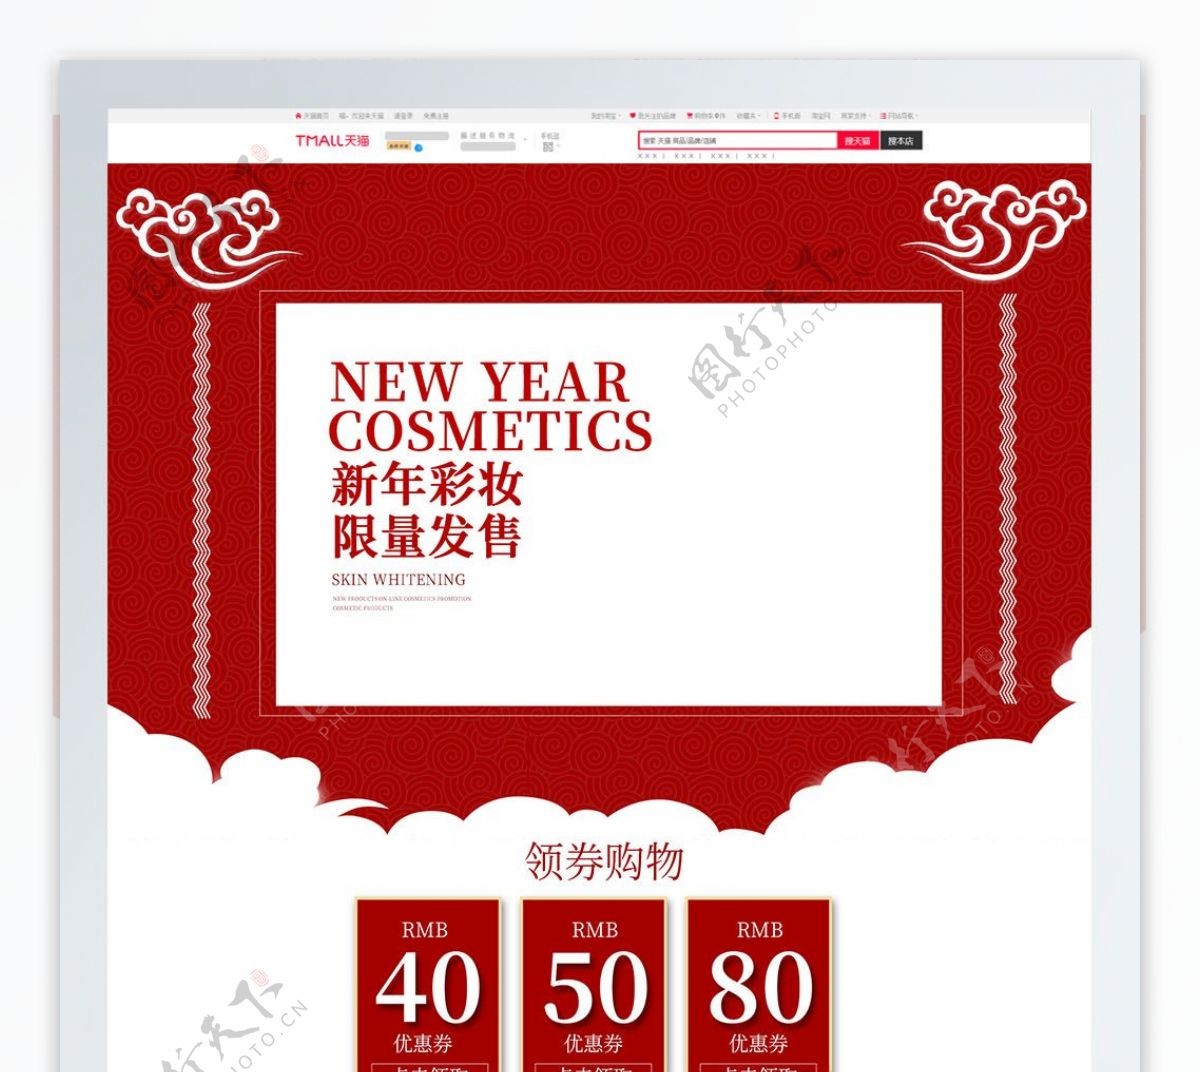 新年彩妆限量发售首页模板